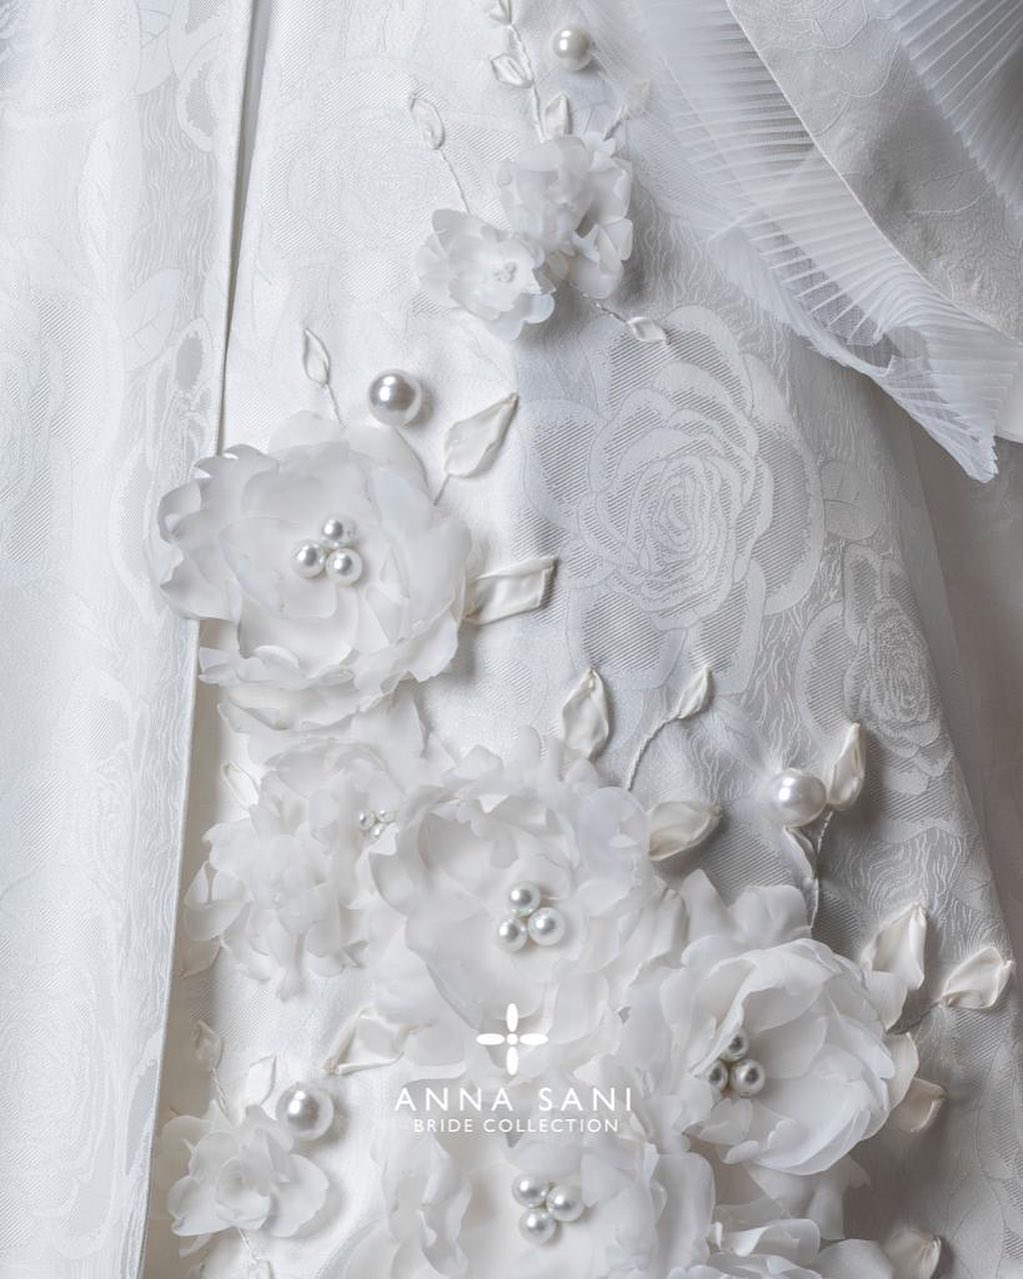 مجموعه جدید لباس عروس برند anna sanı با نام رویای سفید